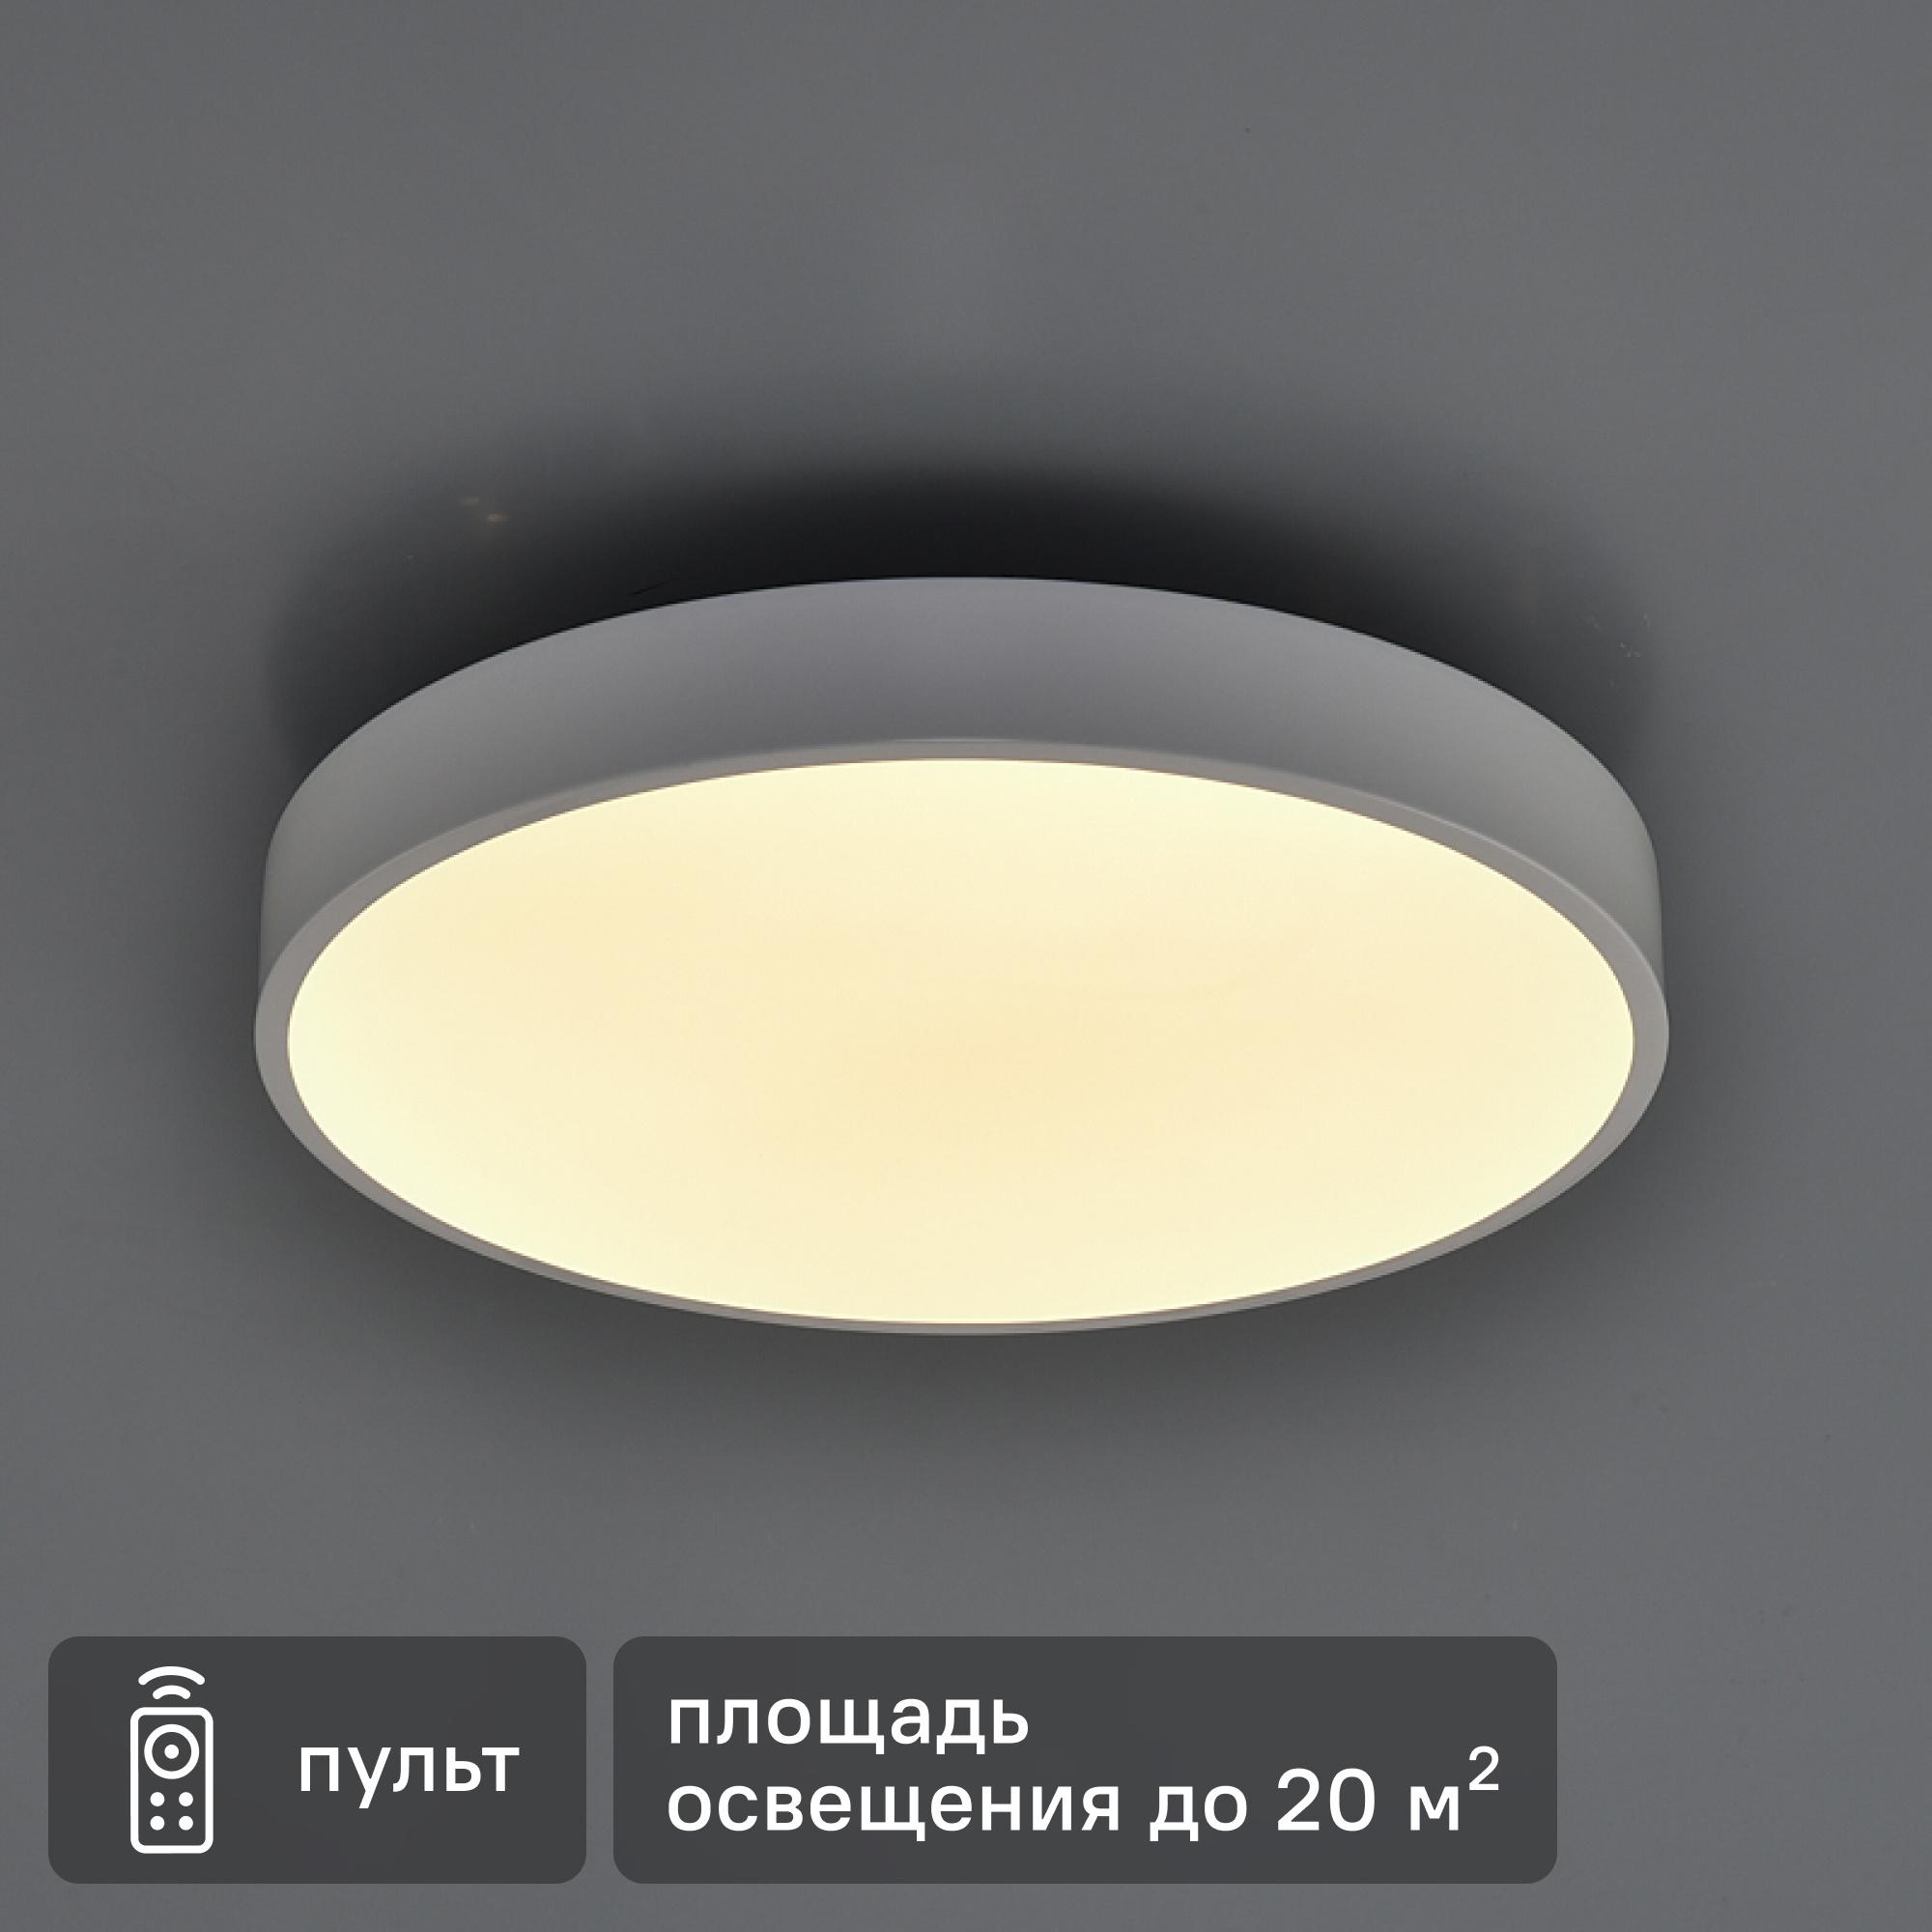 Светильник потолочный gm a30 25 29 cm 40 l00 v с декоративной накладкой фото